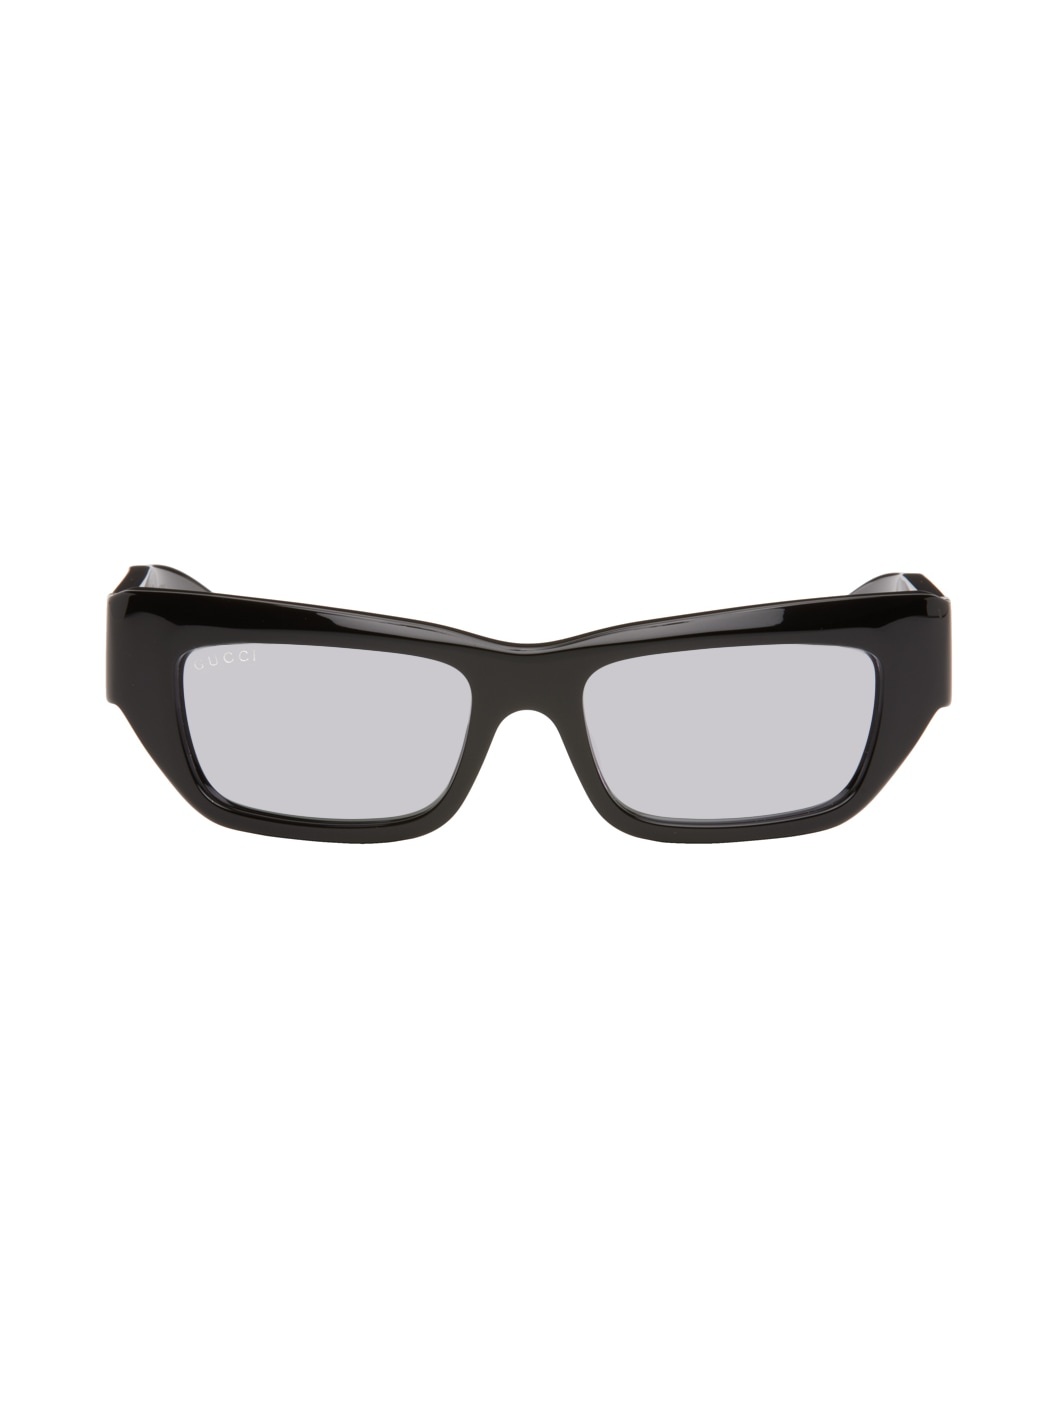 Black Rectangular Sunglasses - 1